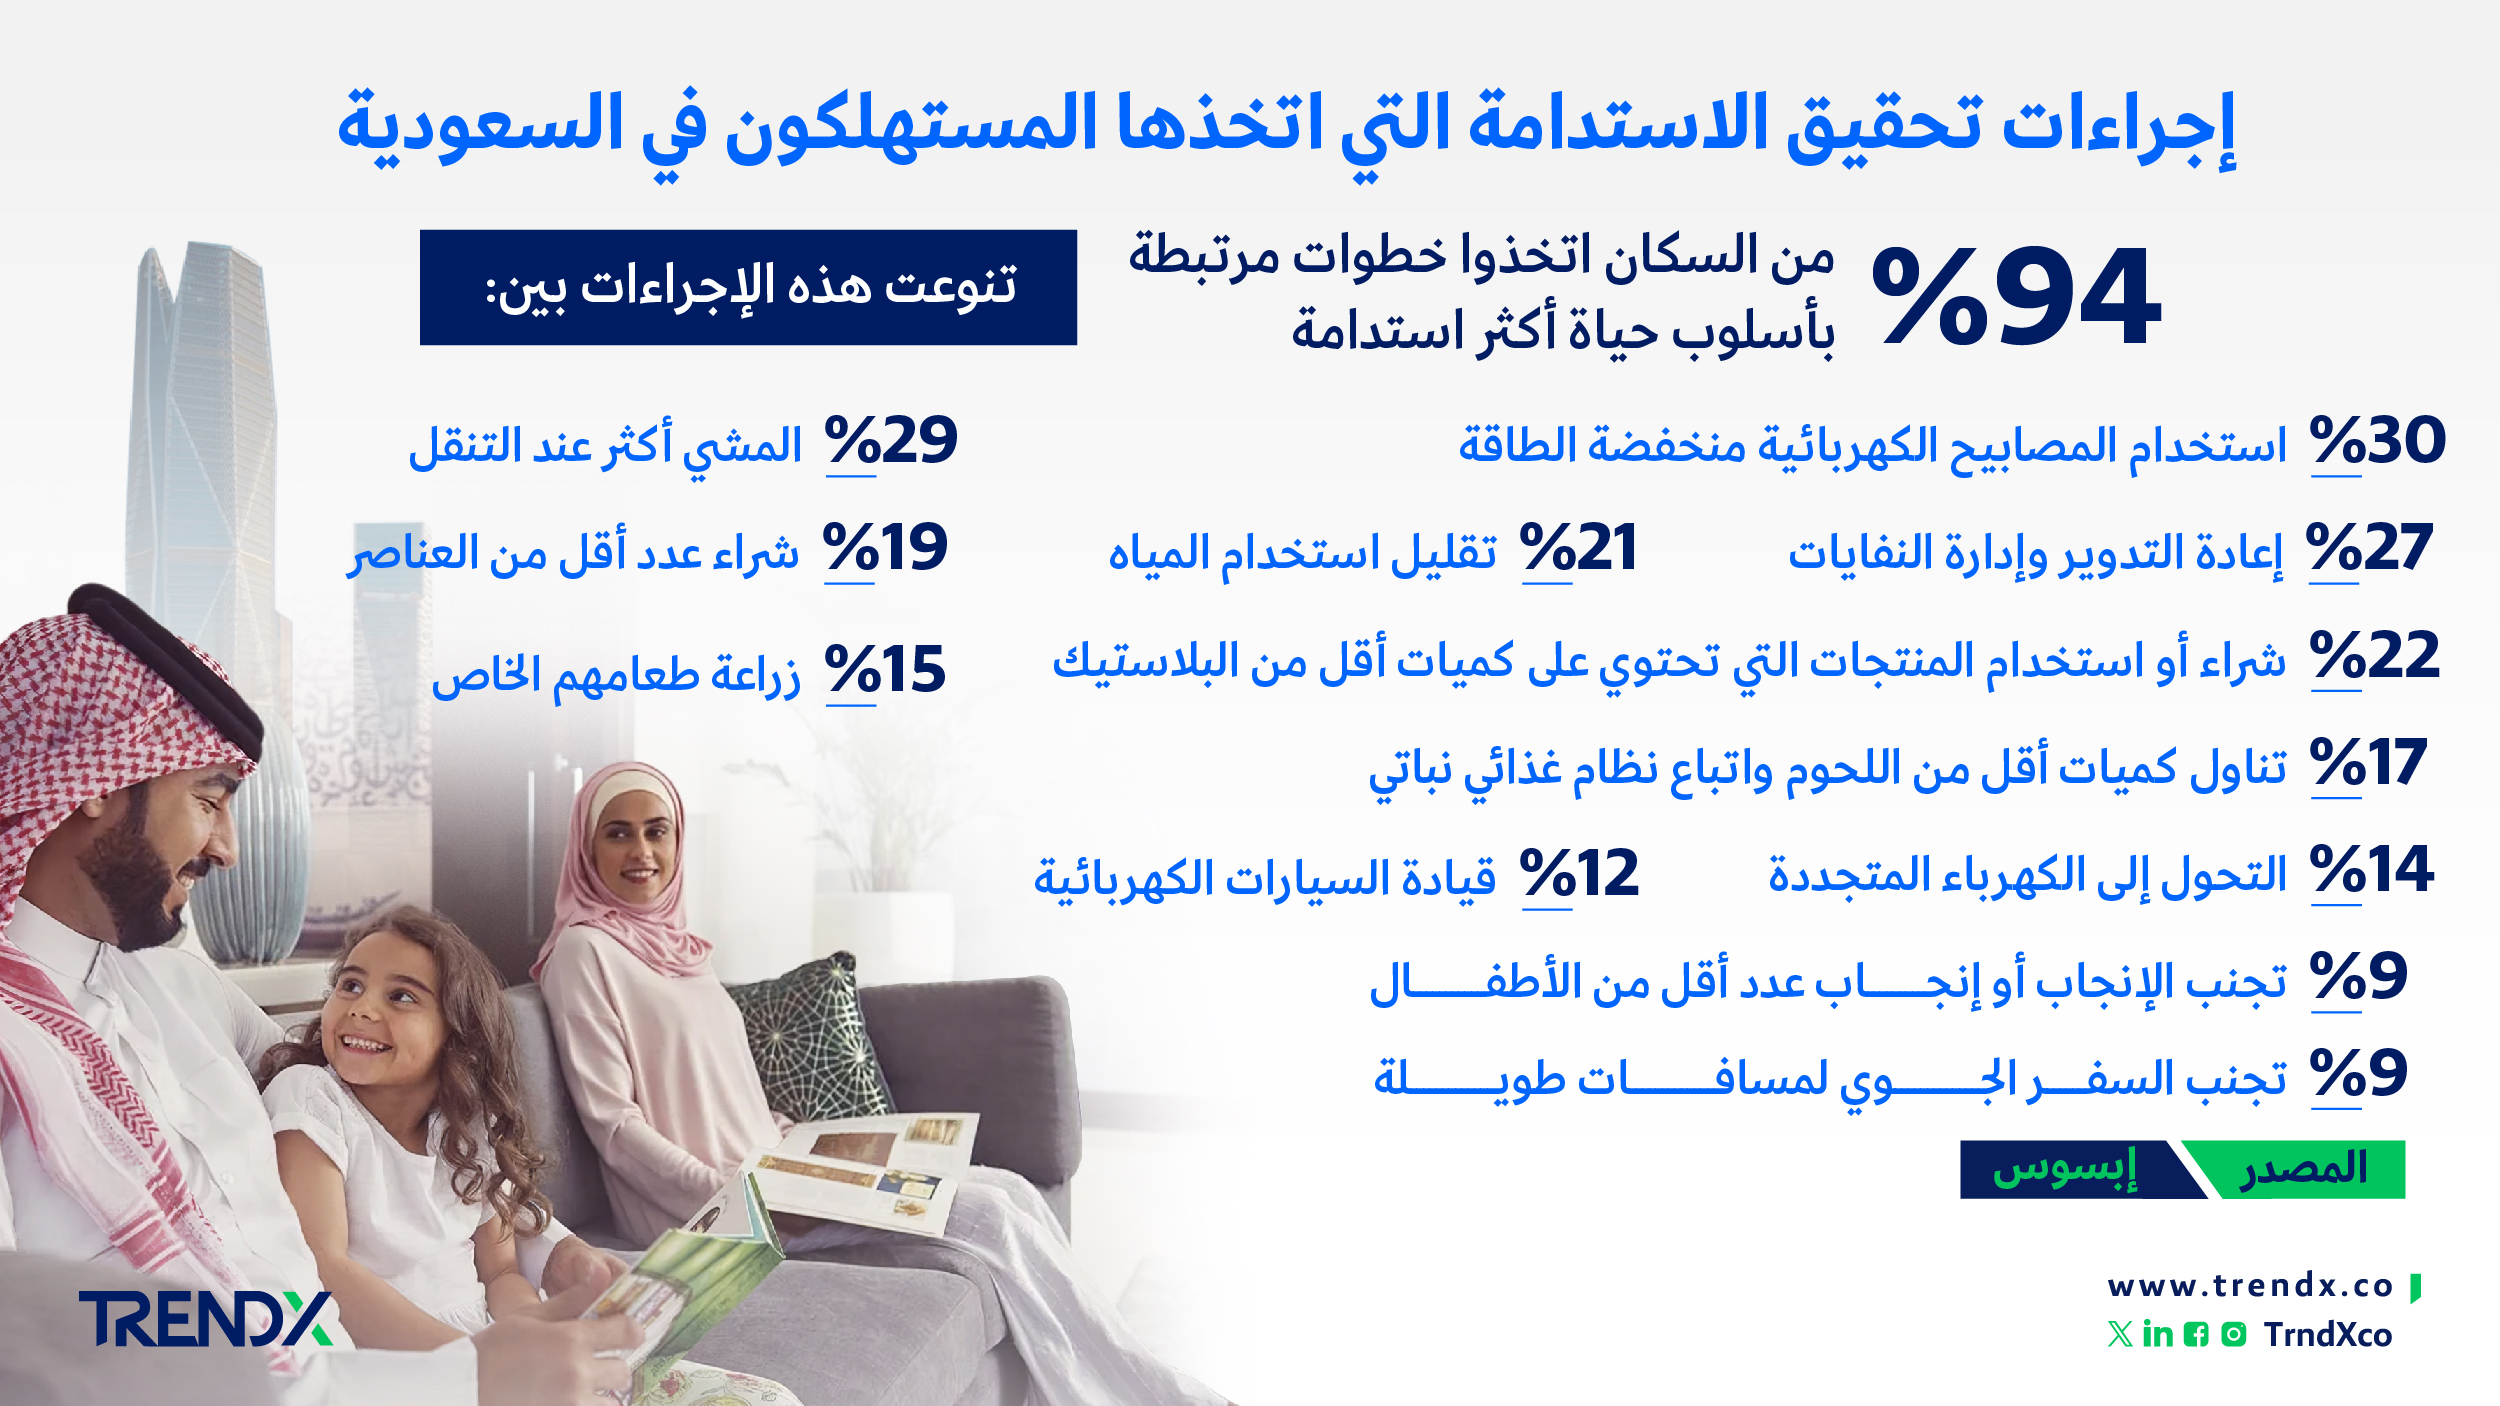 إجراءات تحقيق الاستدامة التي اتخذها المستهلكون في السعودية ثروات السعوديين في الفترة من عام 2000 إلى 2022 01